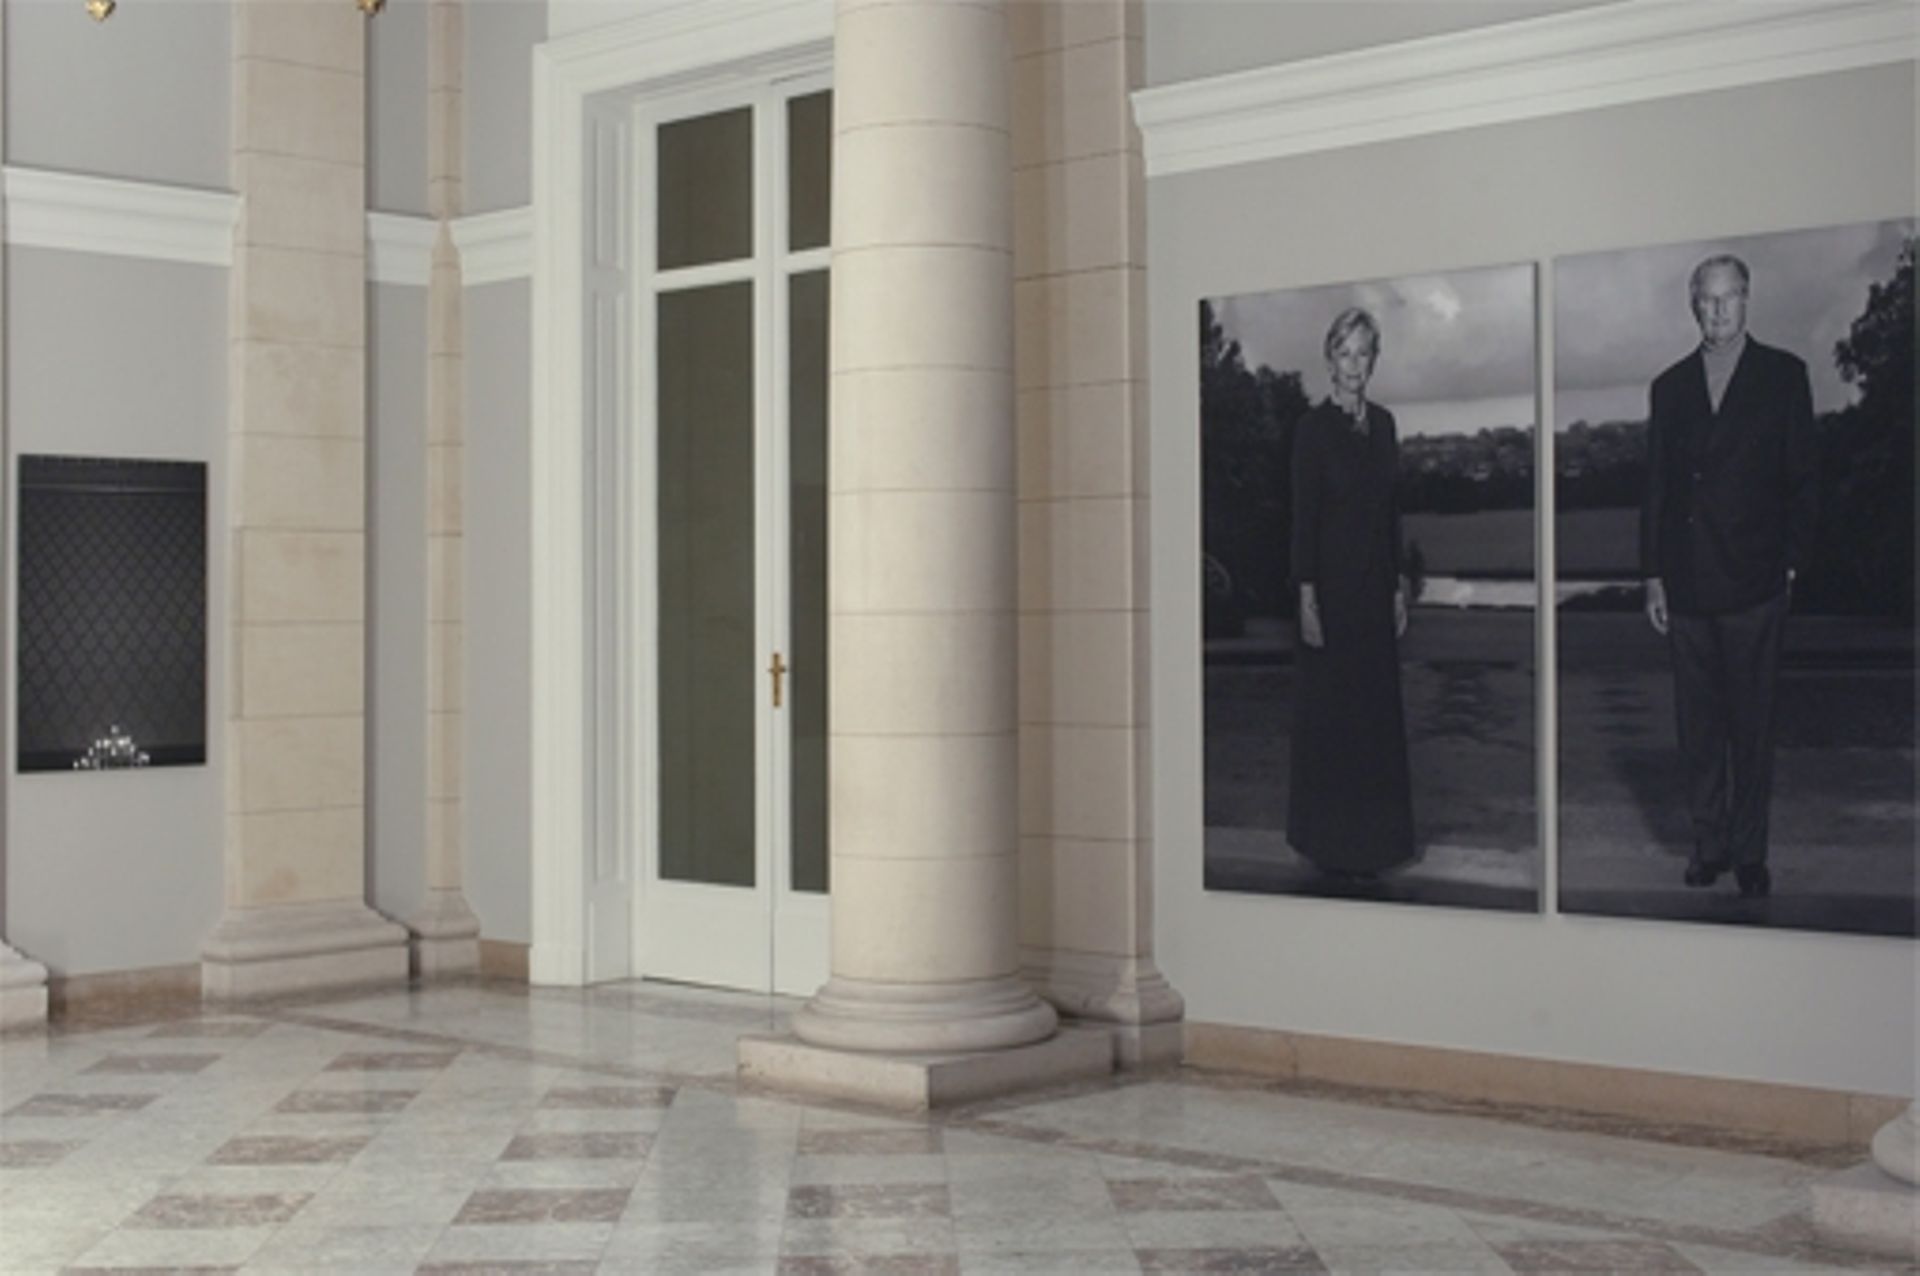 L’œuvre photographique de Dirk Braeckman au palais de Bruxelles.